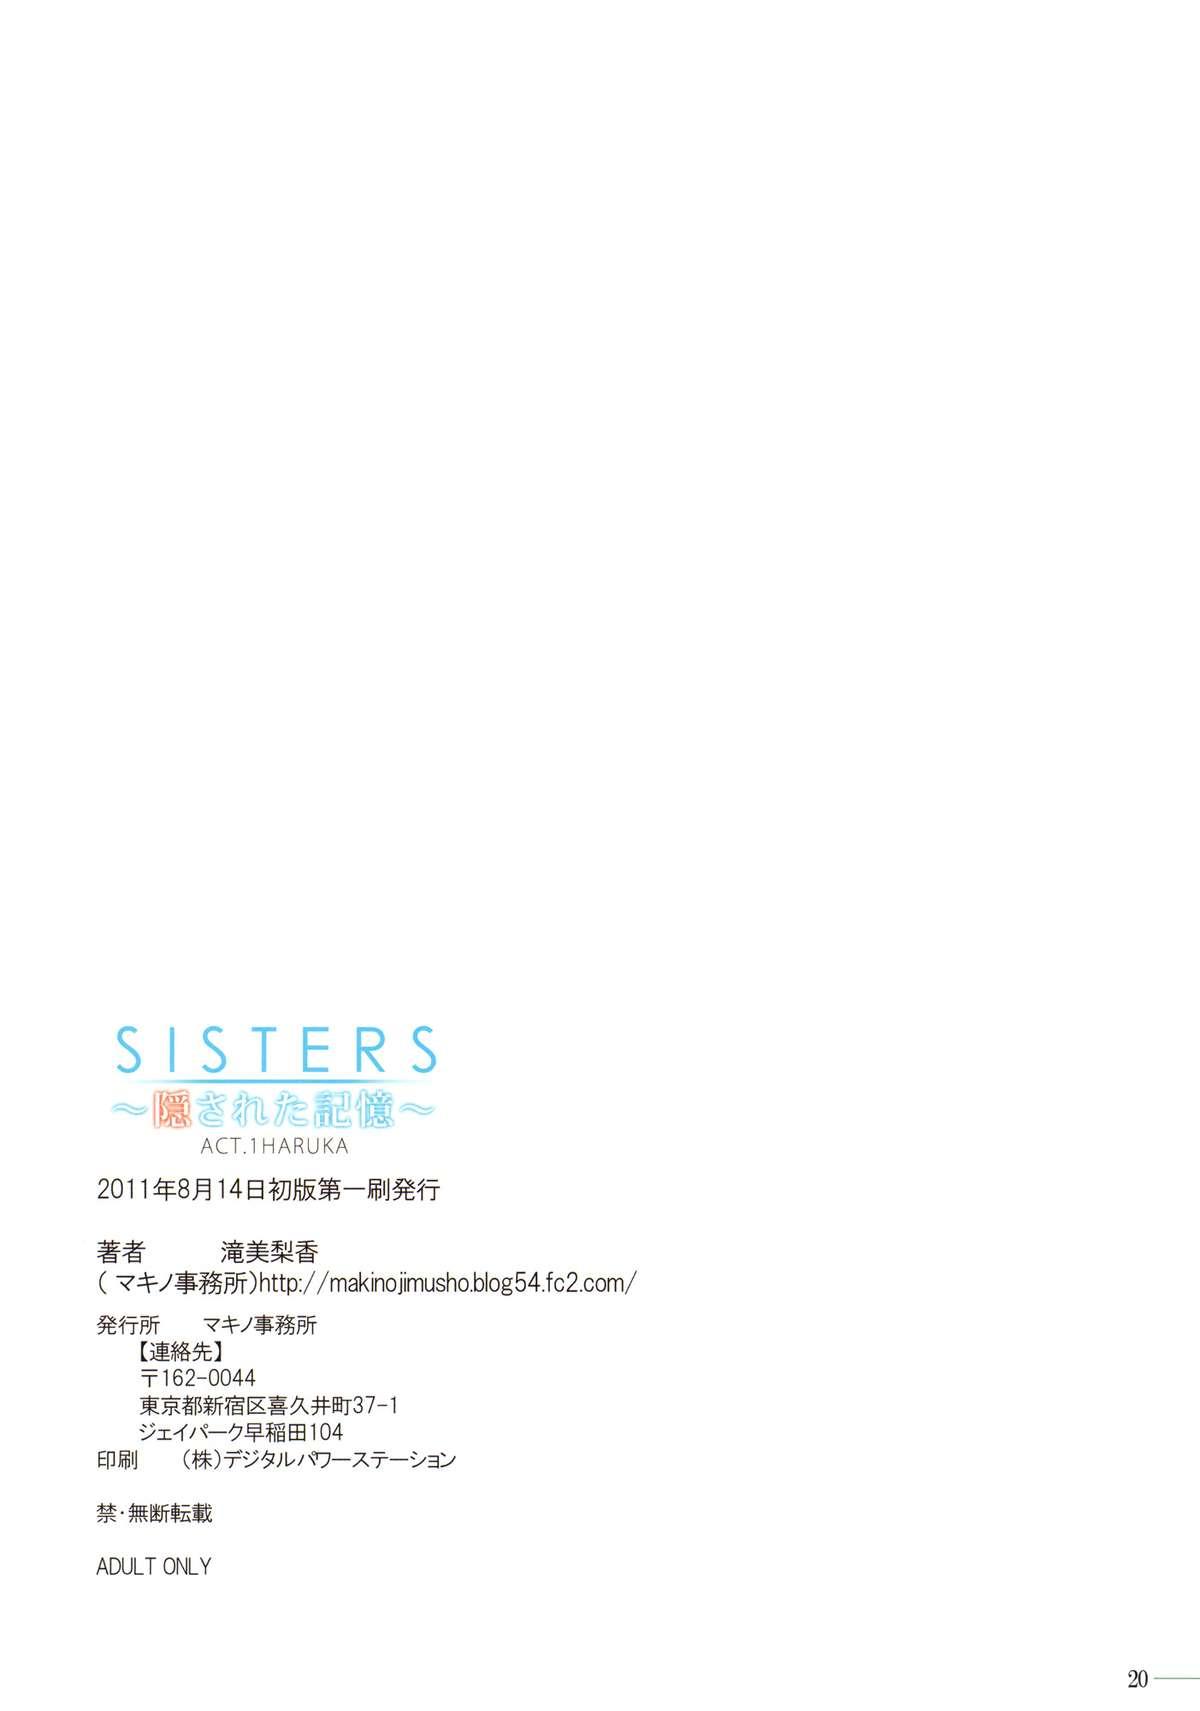 Star SISTERS - Kakusareta Kioku, Natsu no Owaranai Hi - Sisters natsu no saigo no hi Strap On - Page 13